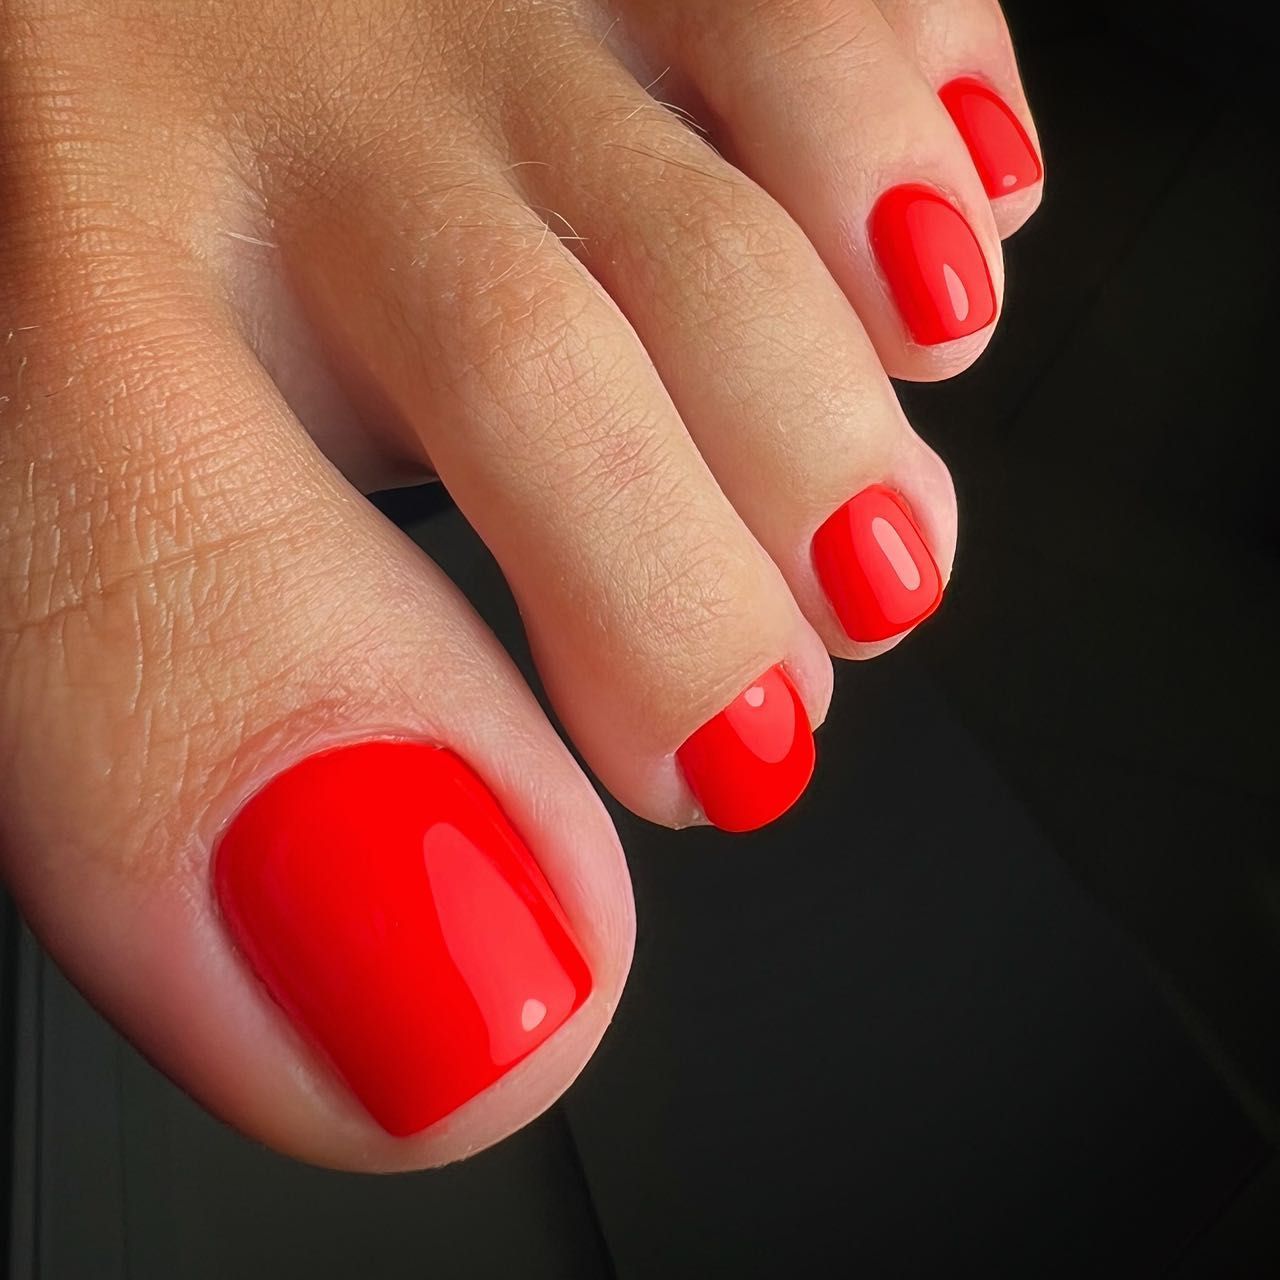 UV gel polish toes - (no deluxe pedicure) portfolio